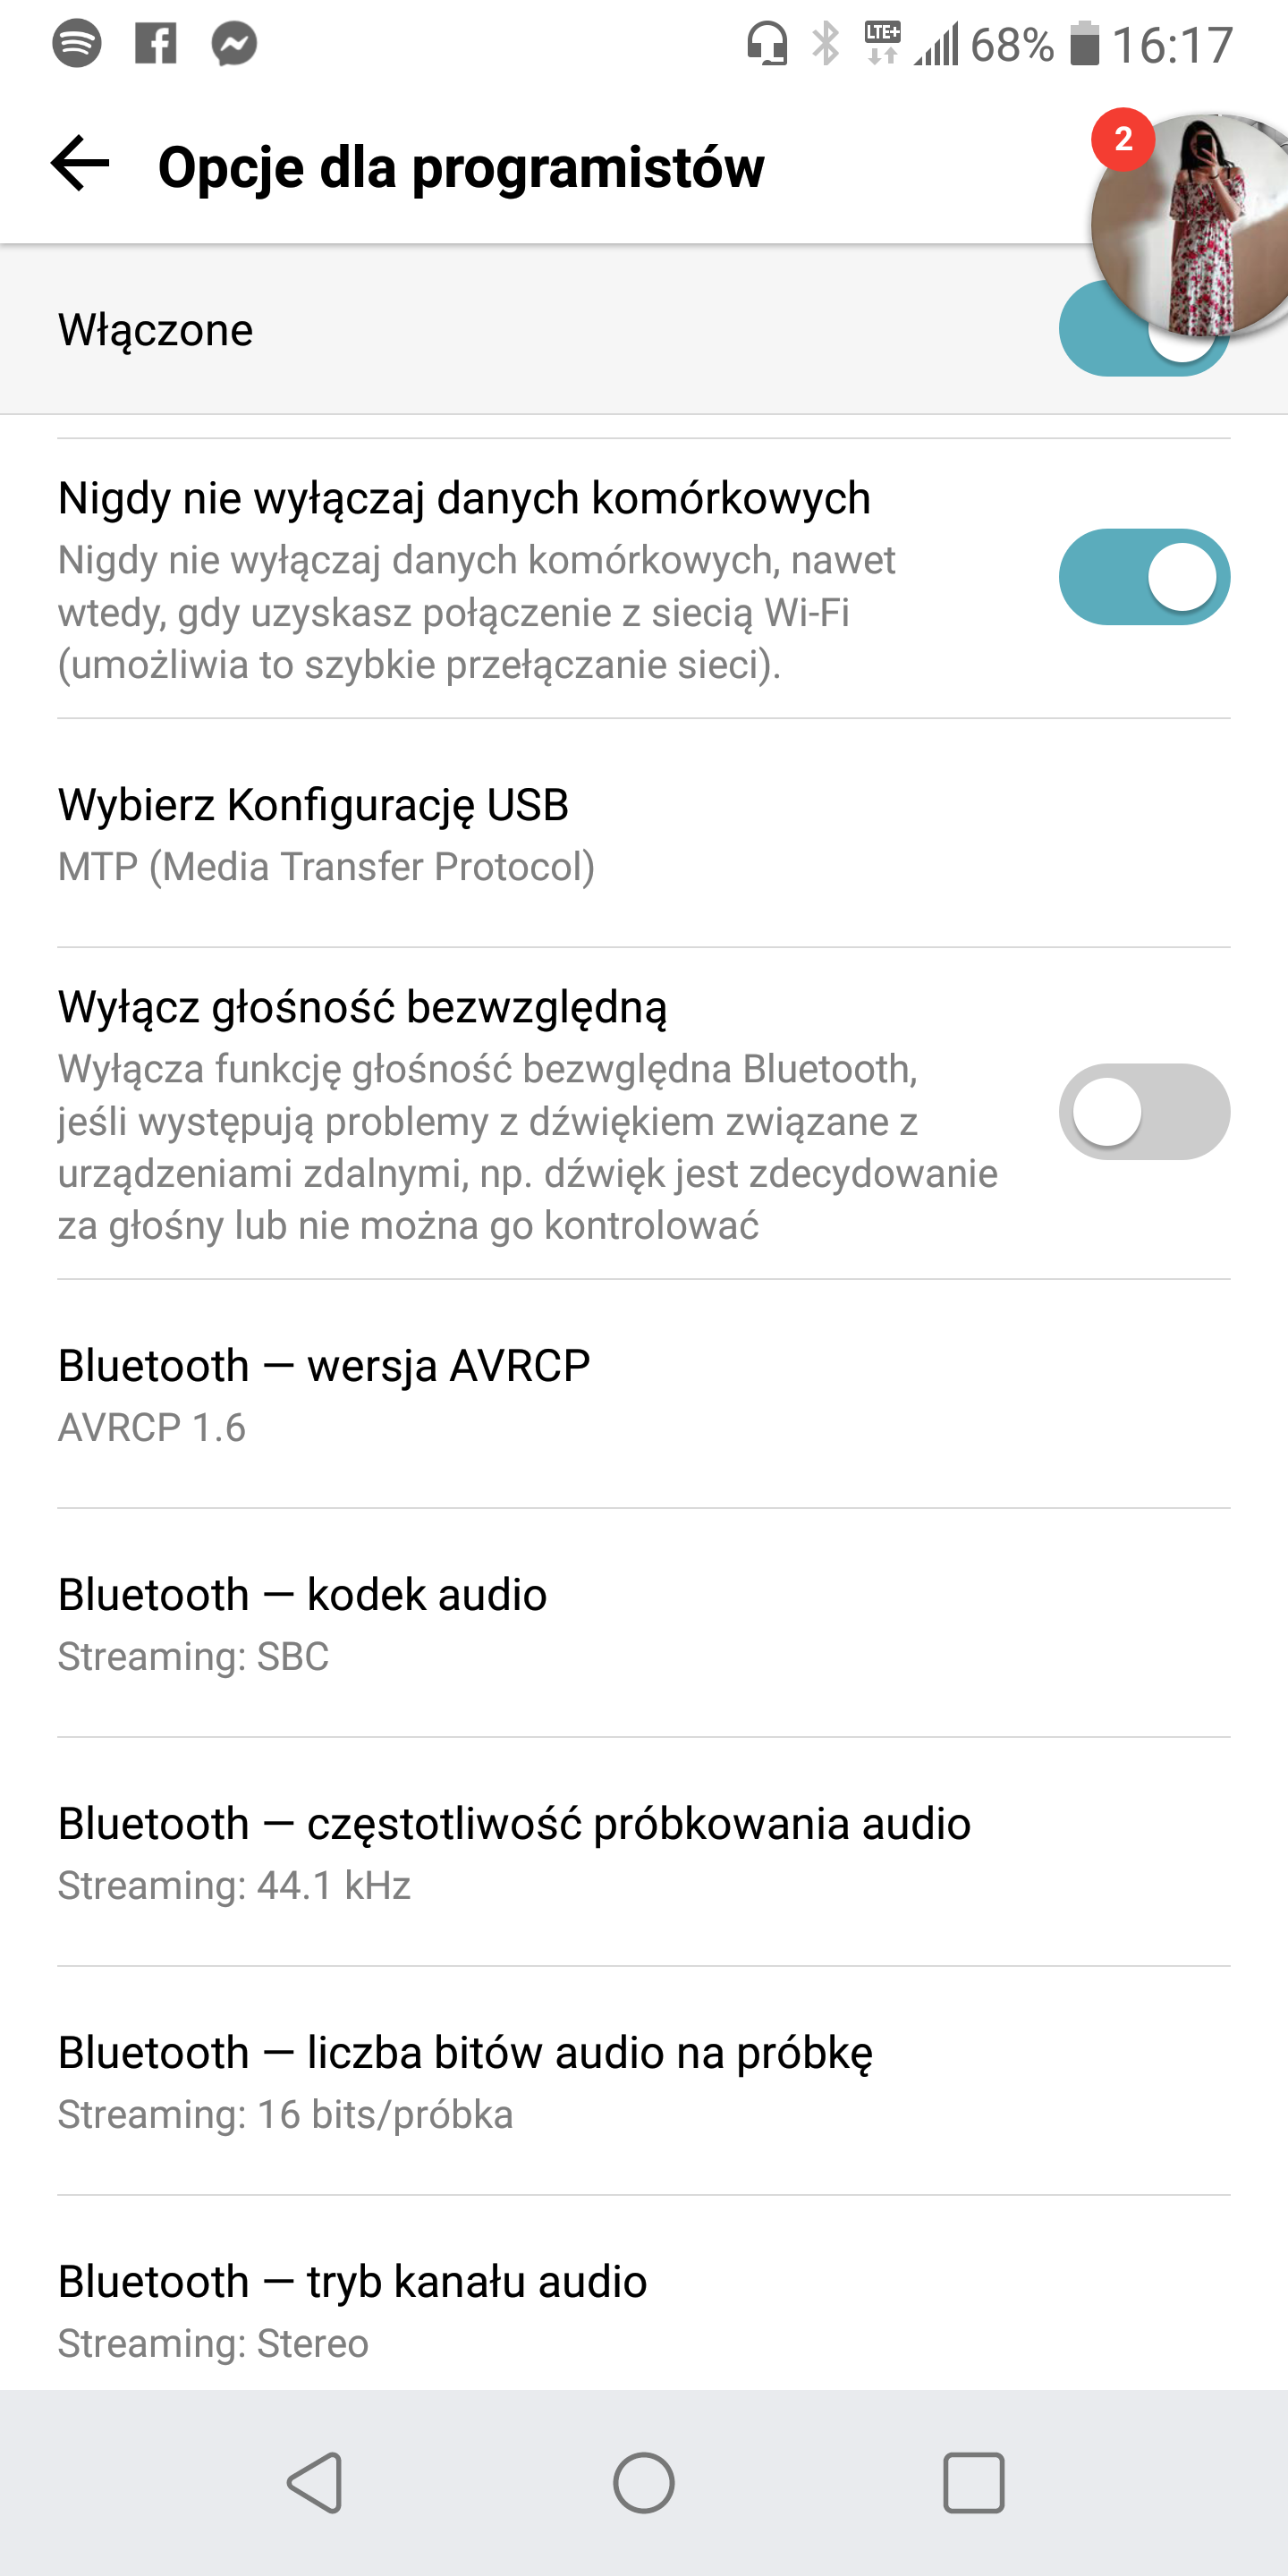 Głośność Bezwzględna Nie Działa. Nie Da Się Zmieniać Głośności W Telefonie Z Poziomu Sparowanego Urządzenia Bluetooth. - Forum Android.com.pl - Dyskutujemy O Technologii